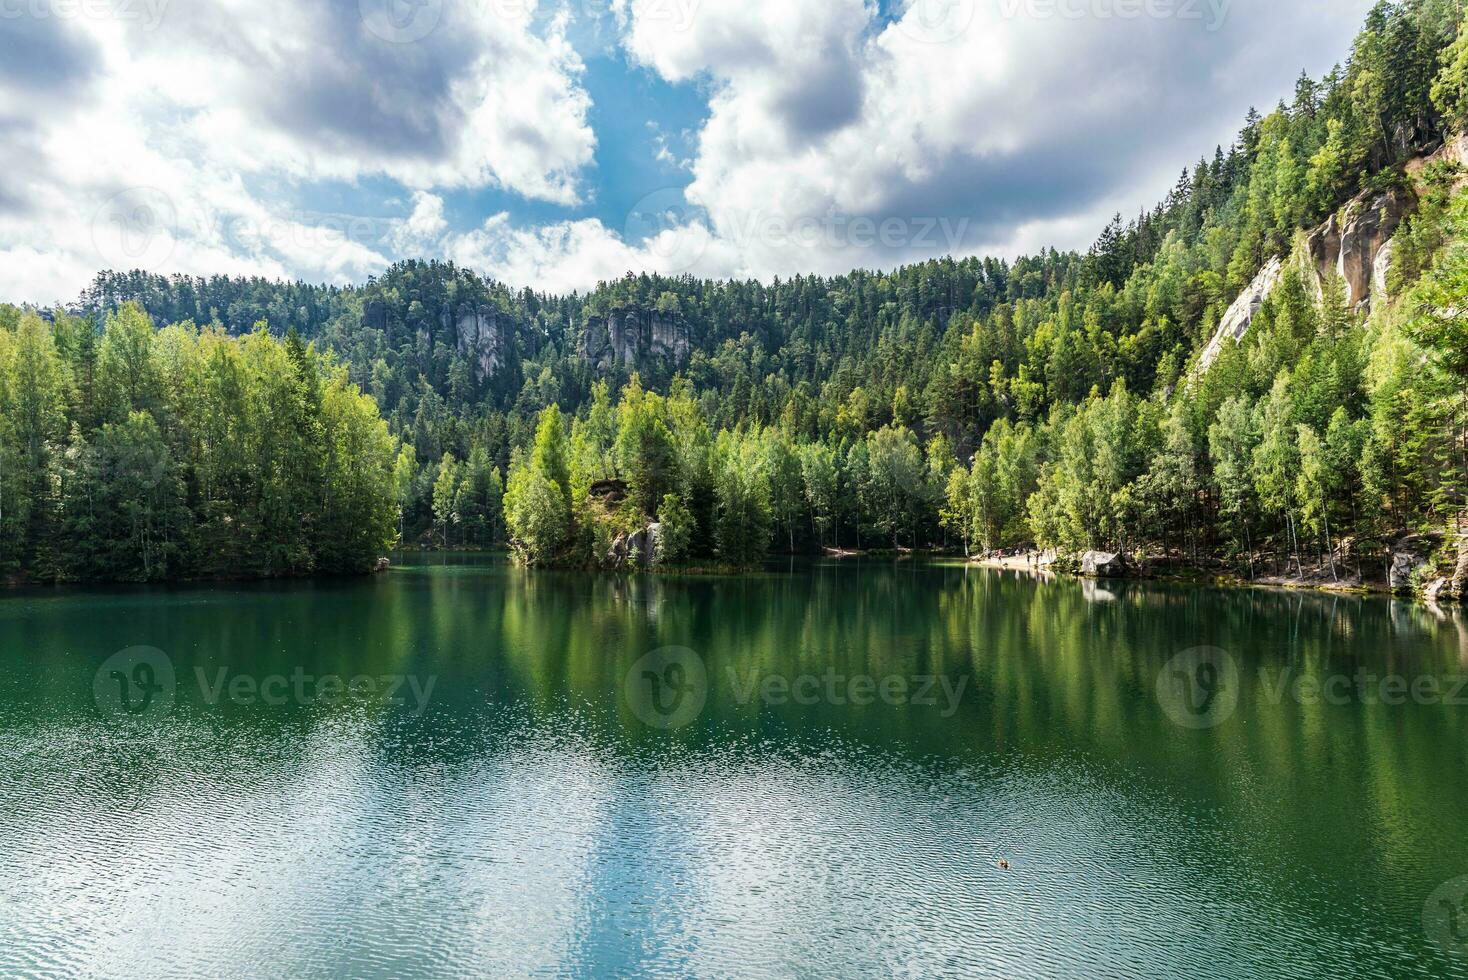 verde agua de calma bosque lago Entre pequeño montañas cubierto con bosque foto